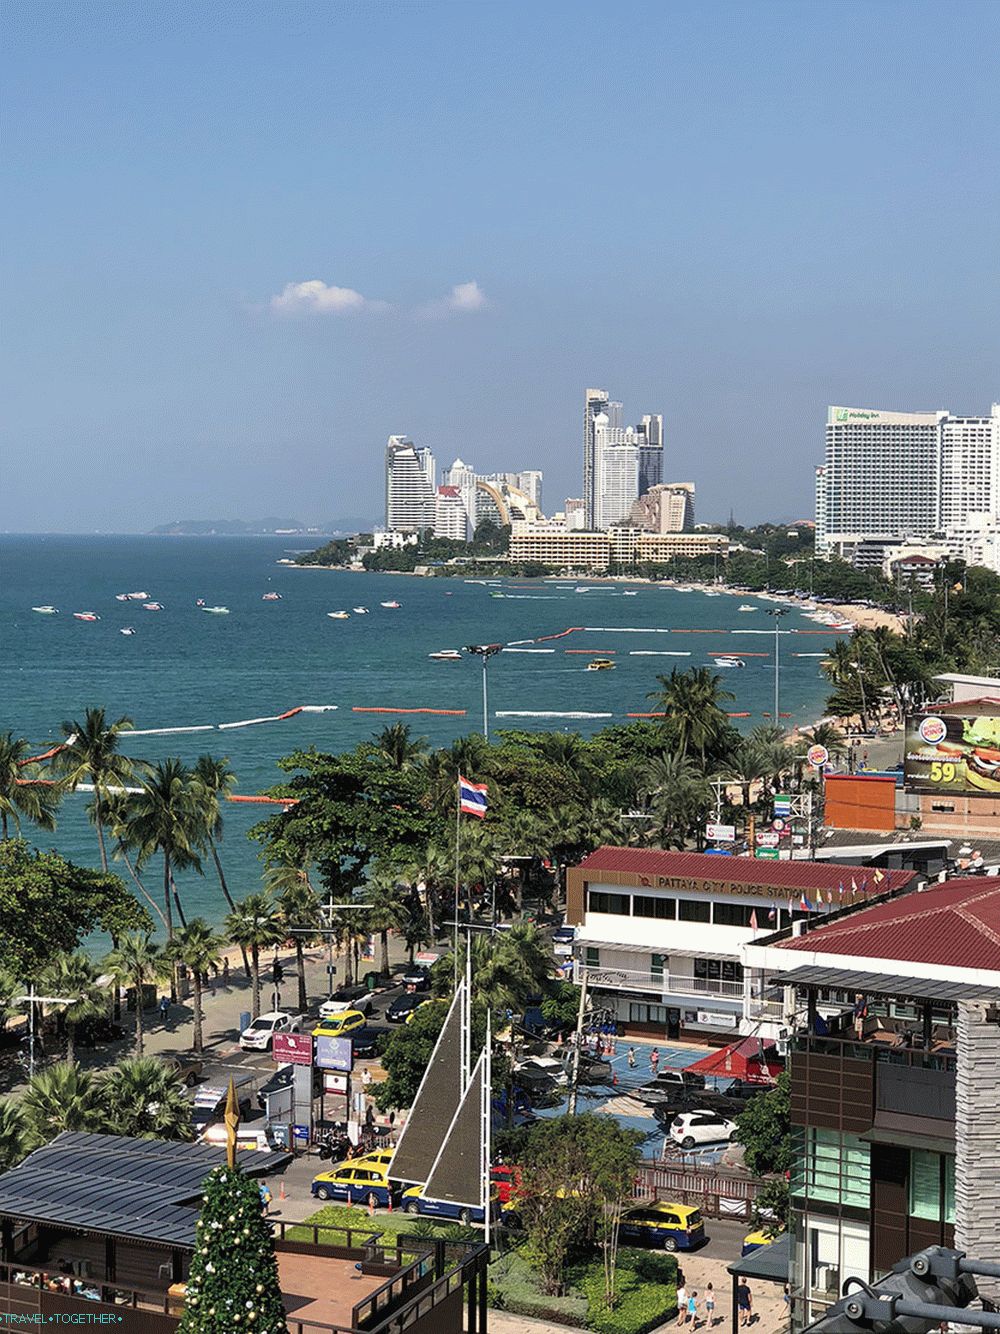 Najboljših 10 mest za bivanje na Tajskem 2019 - Pattaya